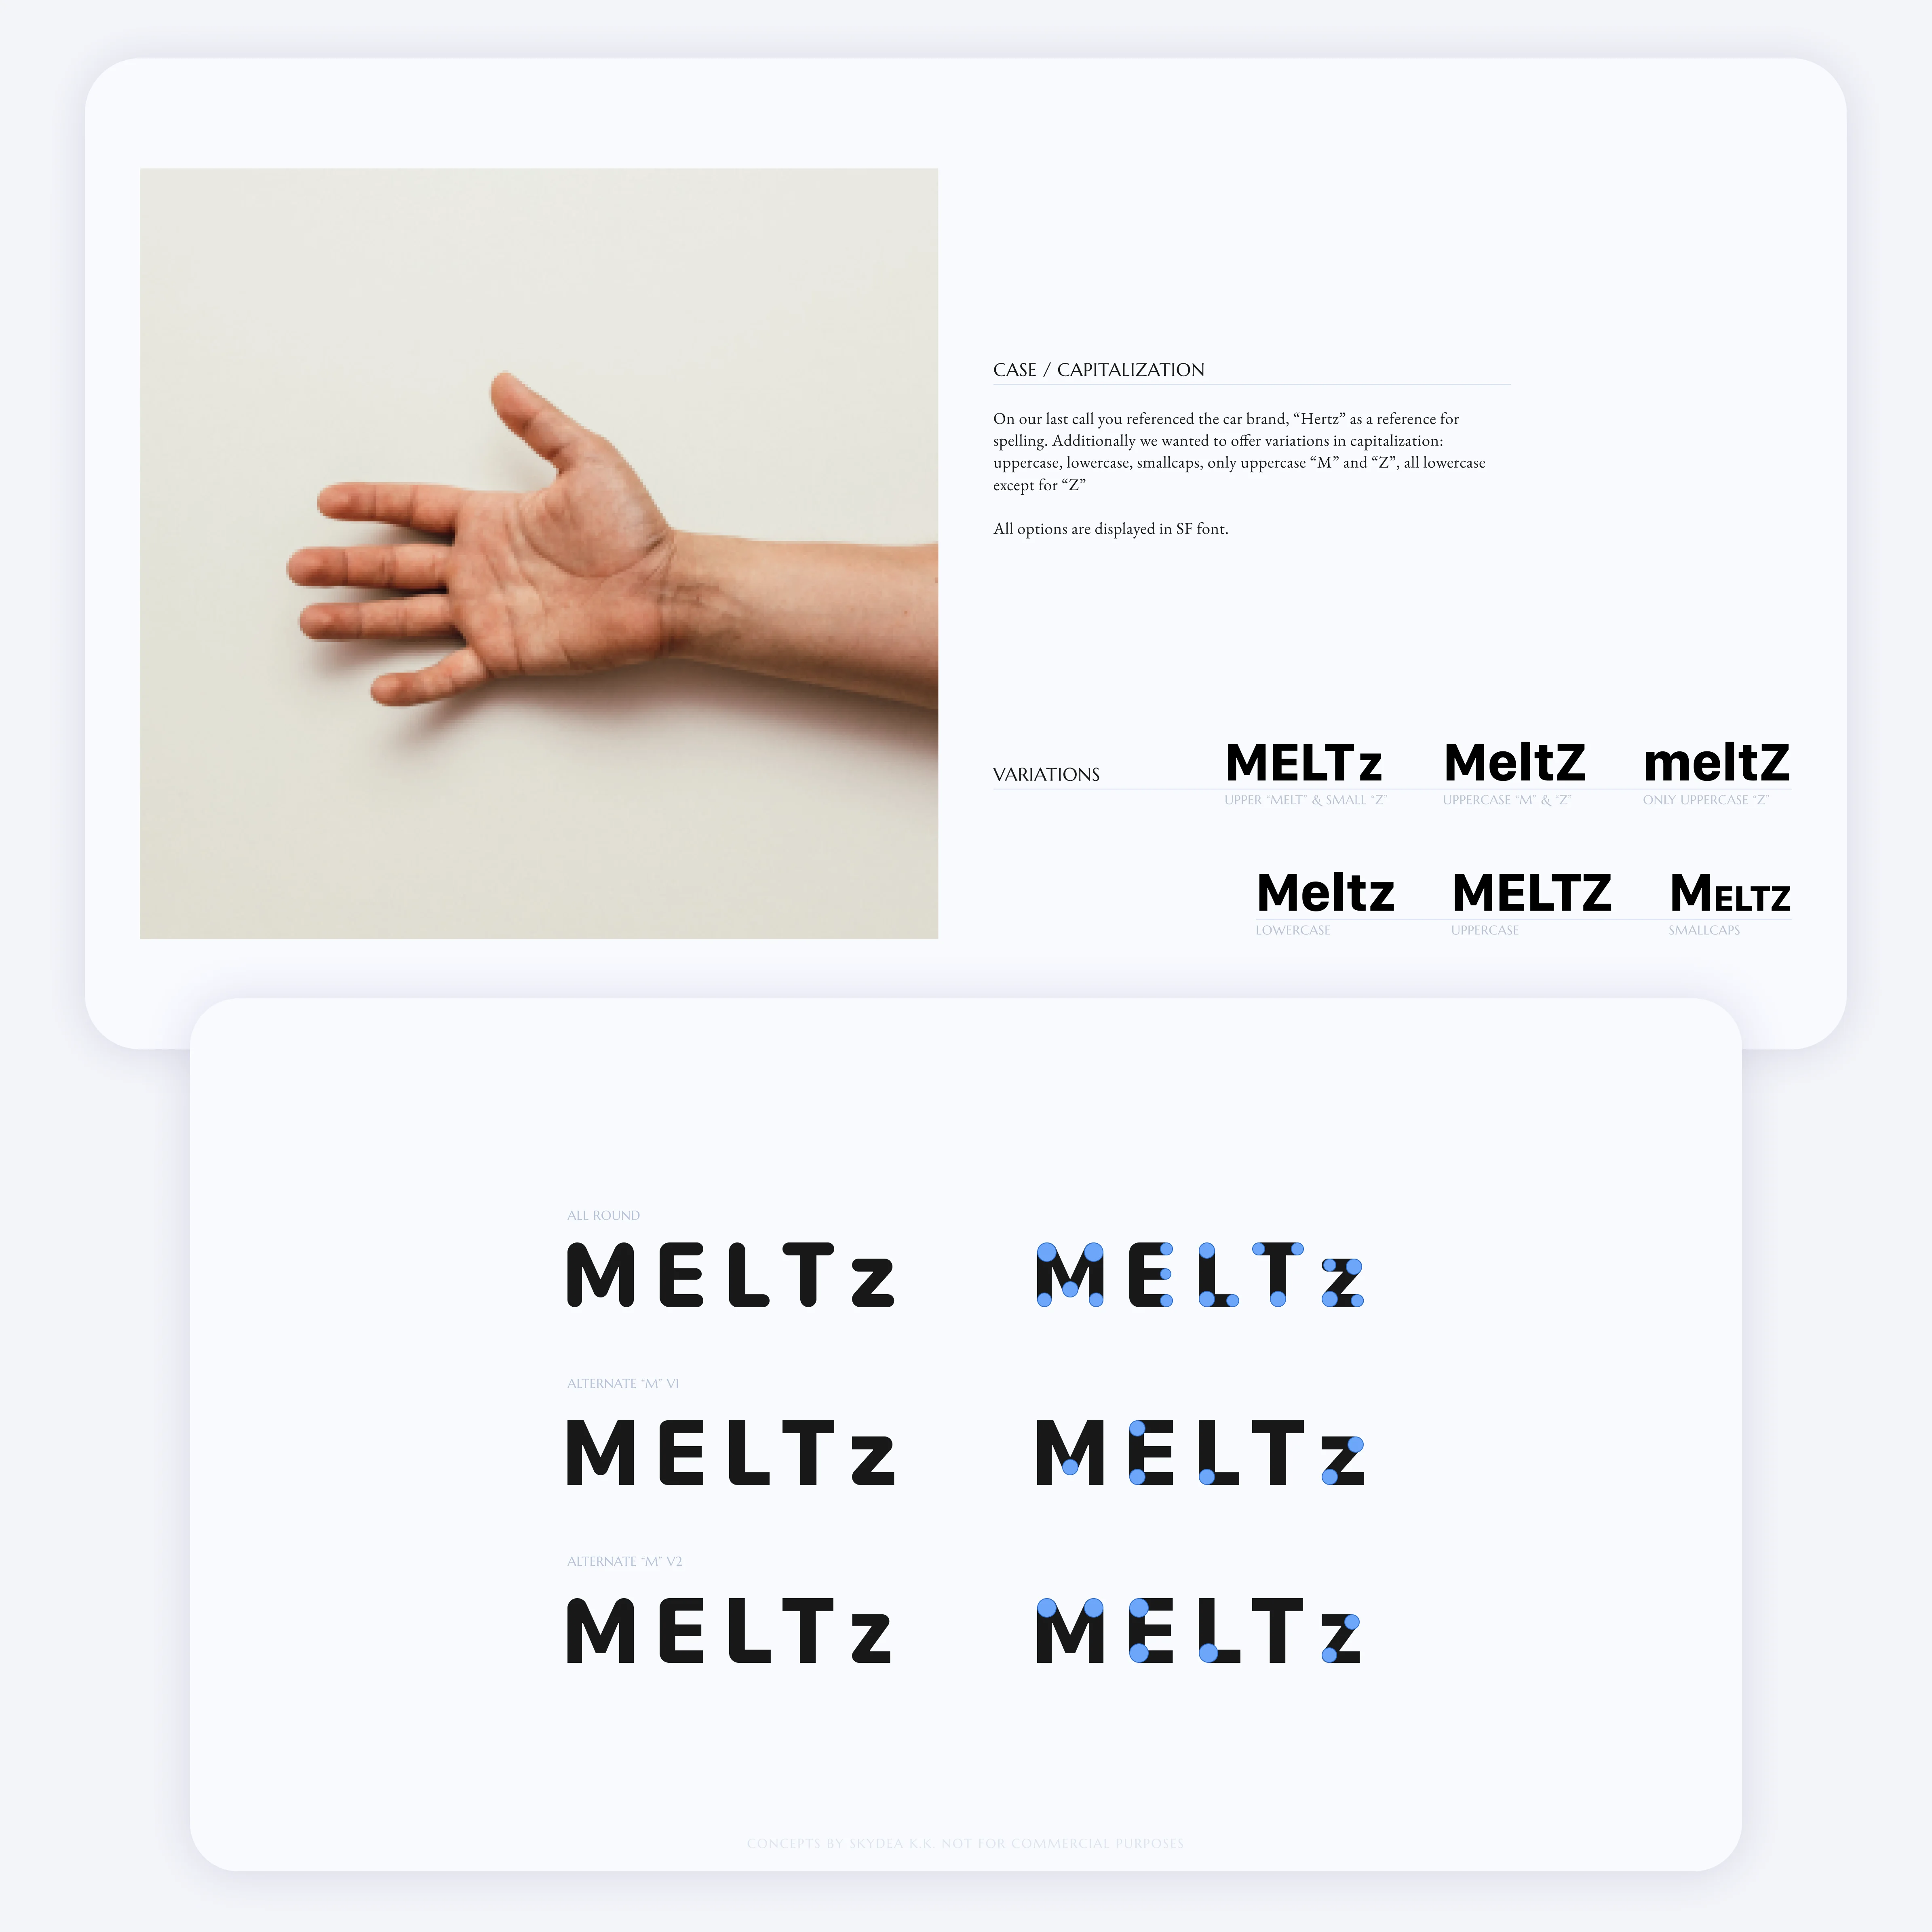 MELTz logo explorations